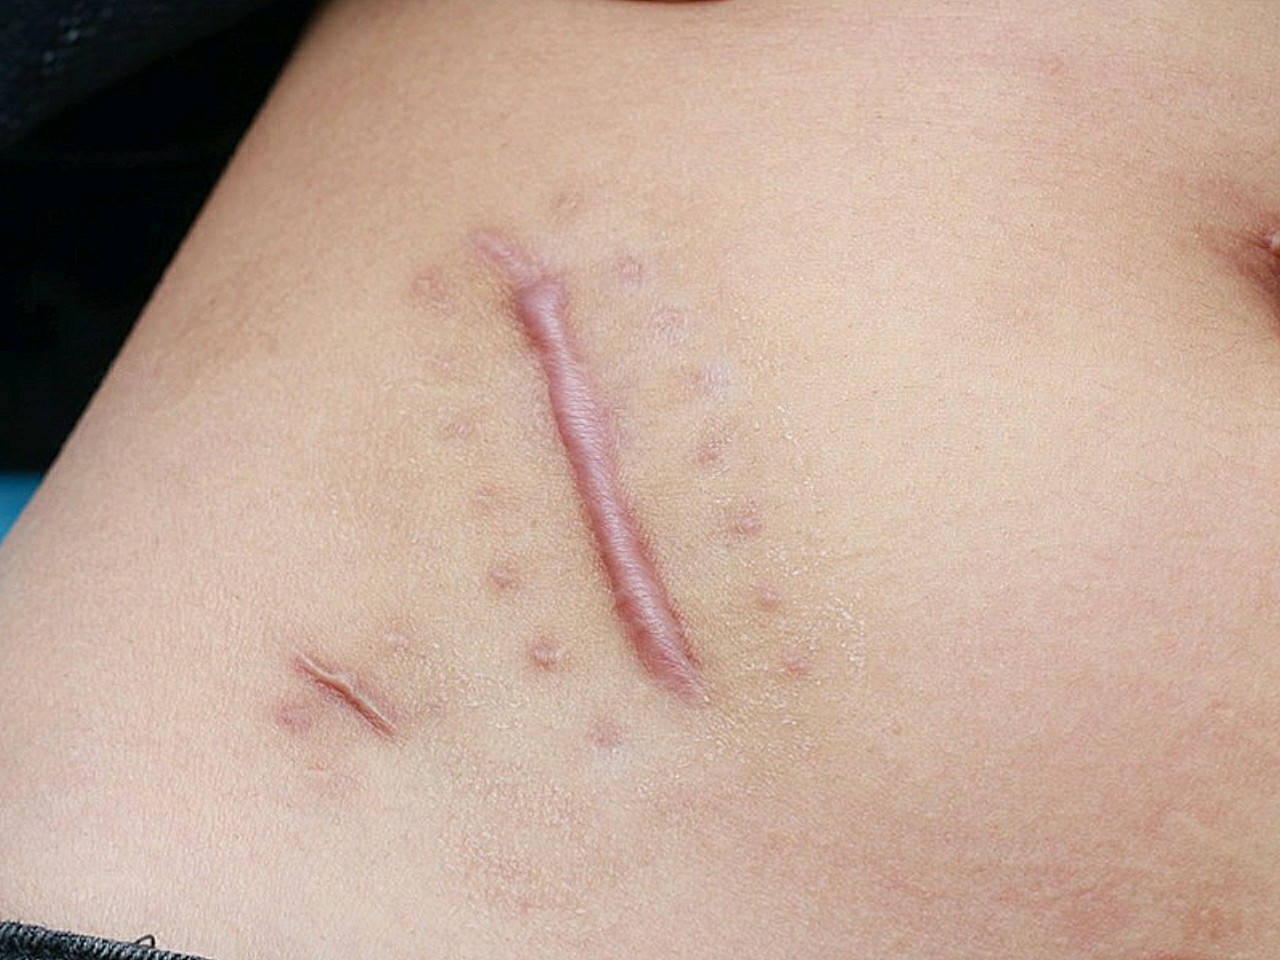 阑尾炎手术疤痕图图片